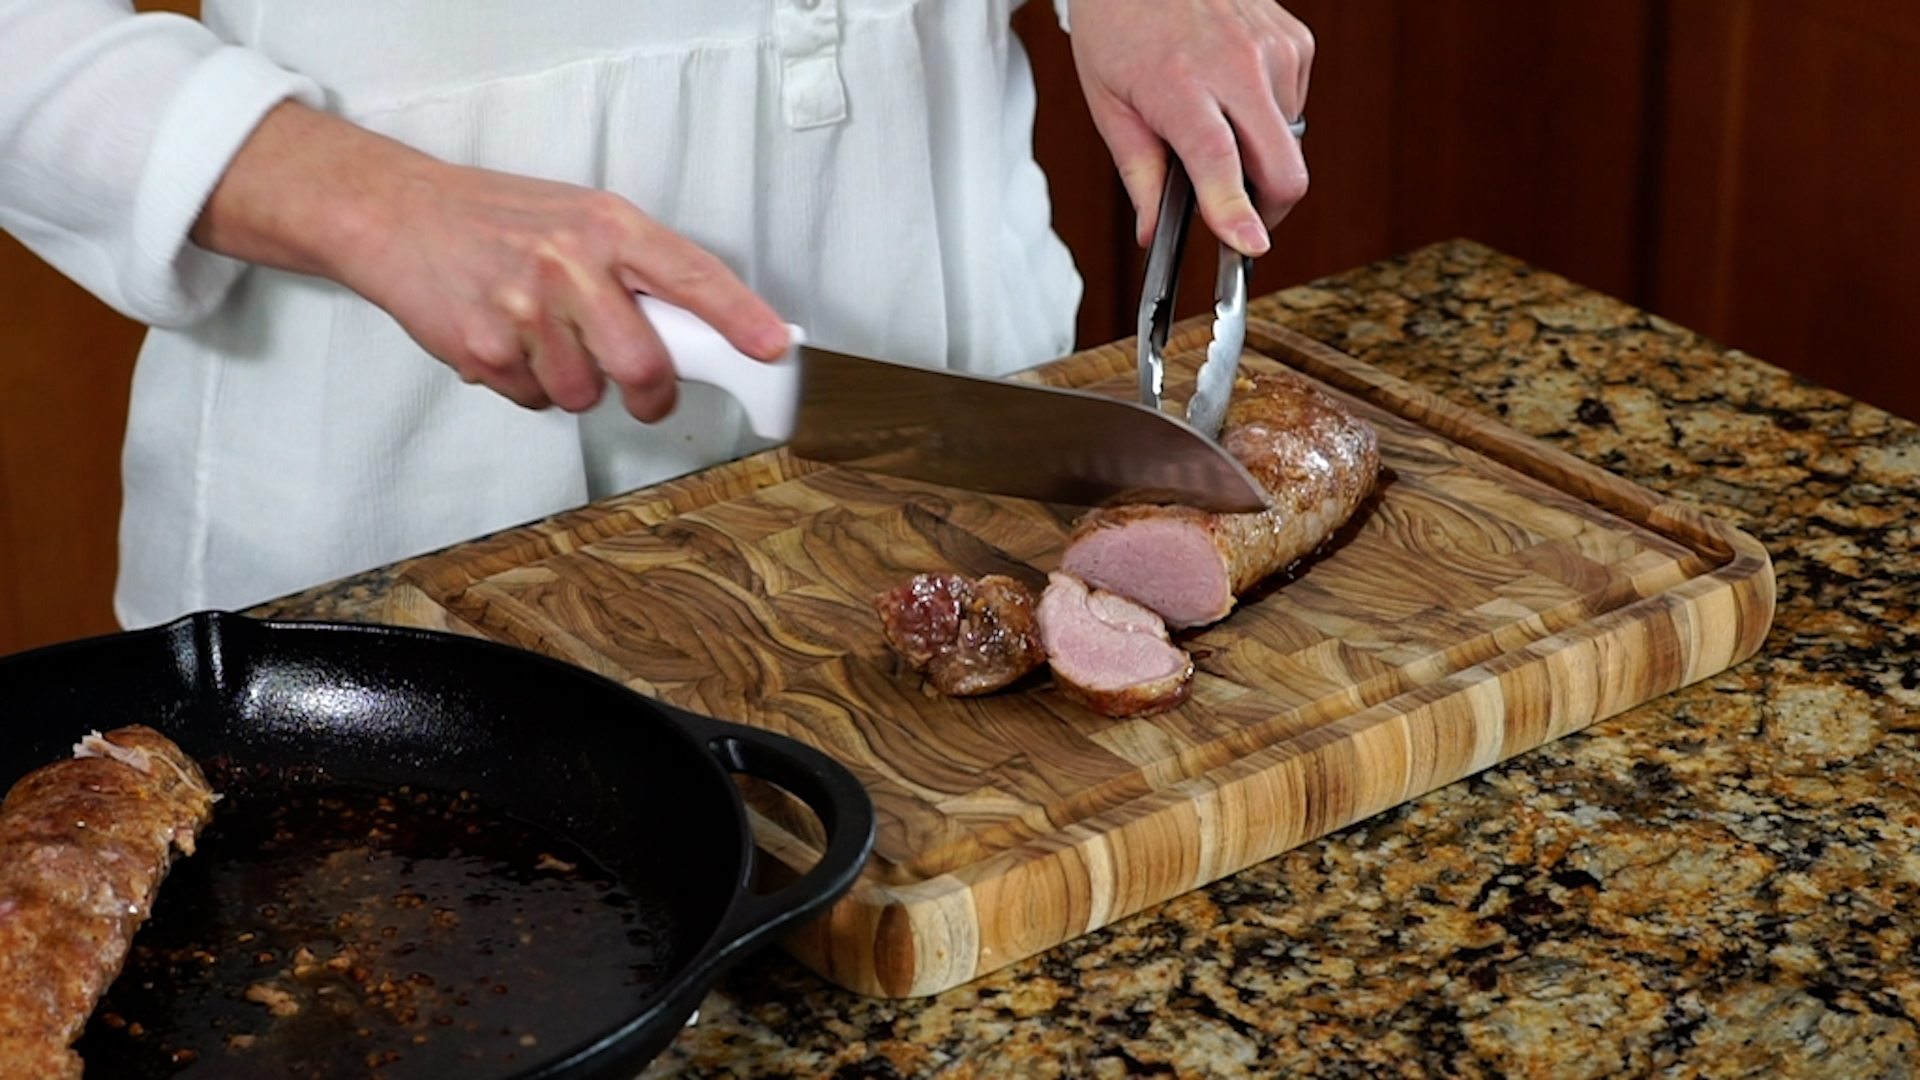 slicing a pork tenderloin on a wooden cutting board